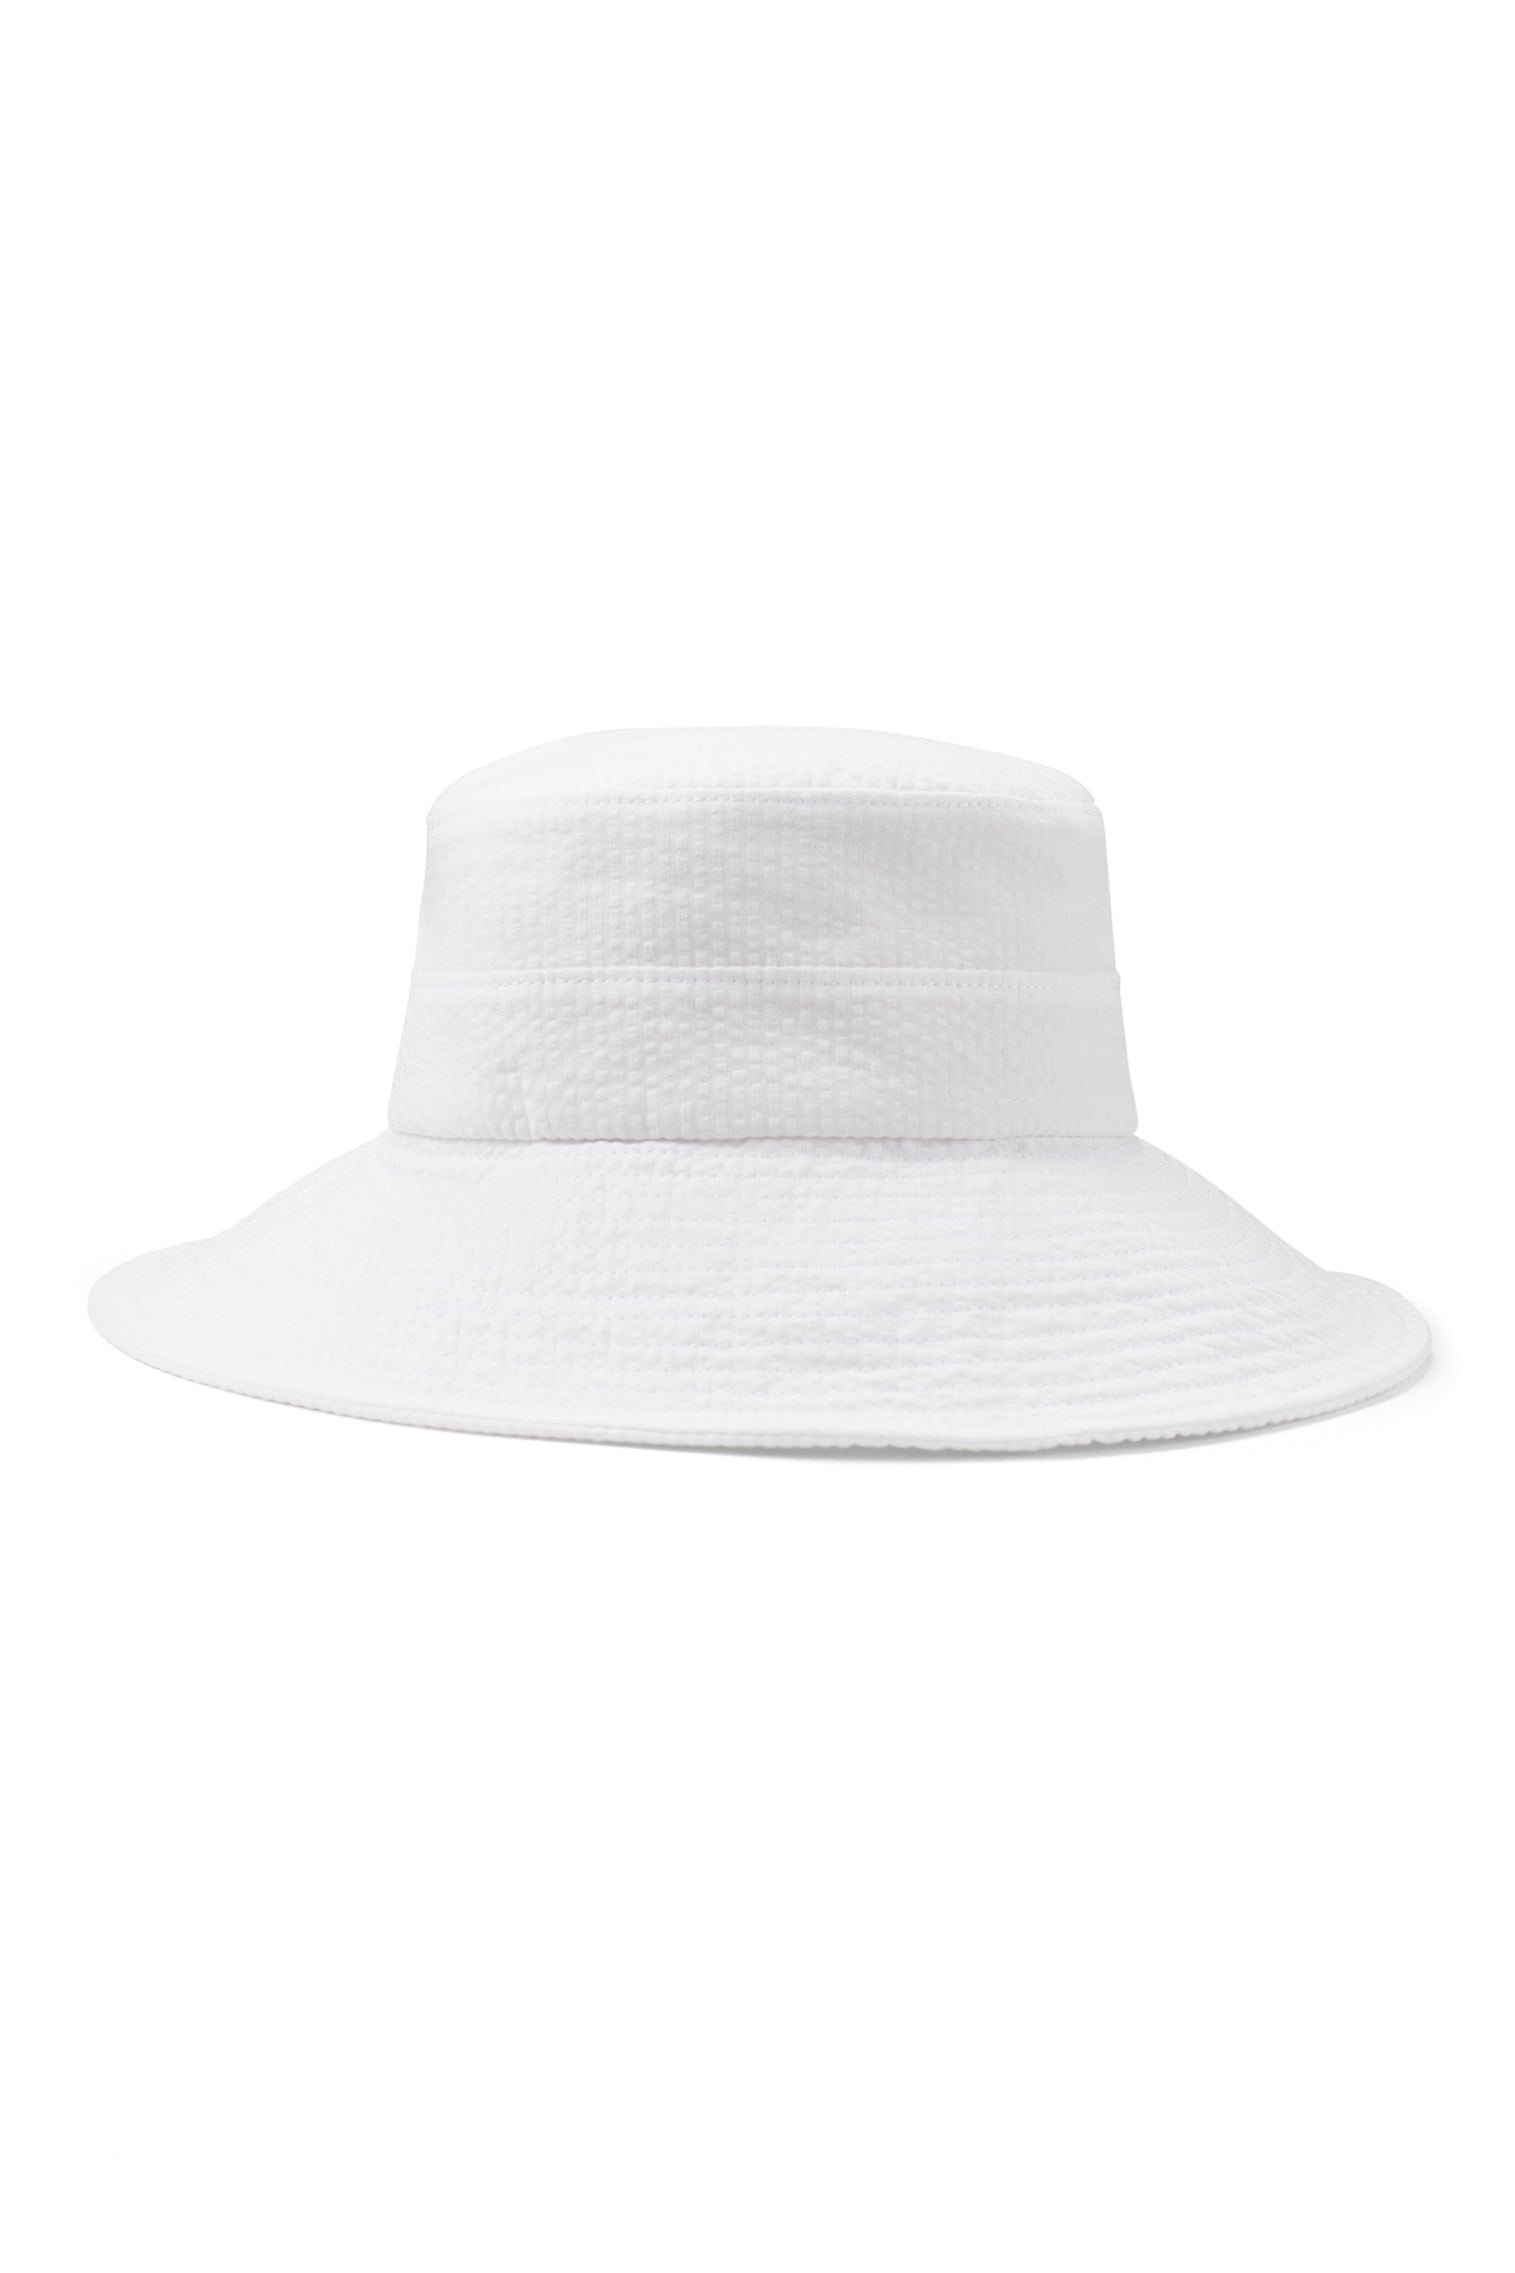 Margot Seersucker Sun Hat - Hats for Oval Face Shapes - Lock & Co. Hatters London UK